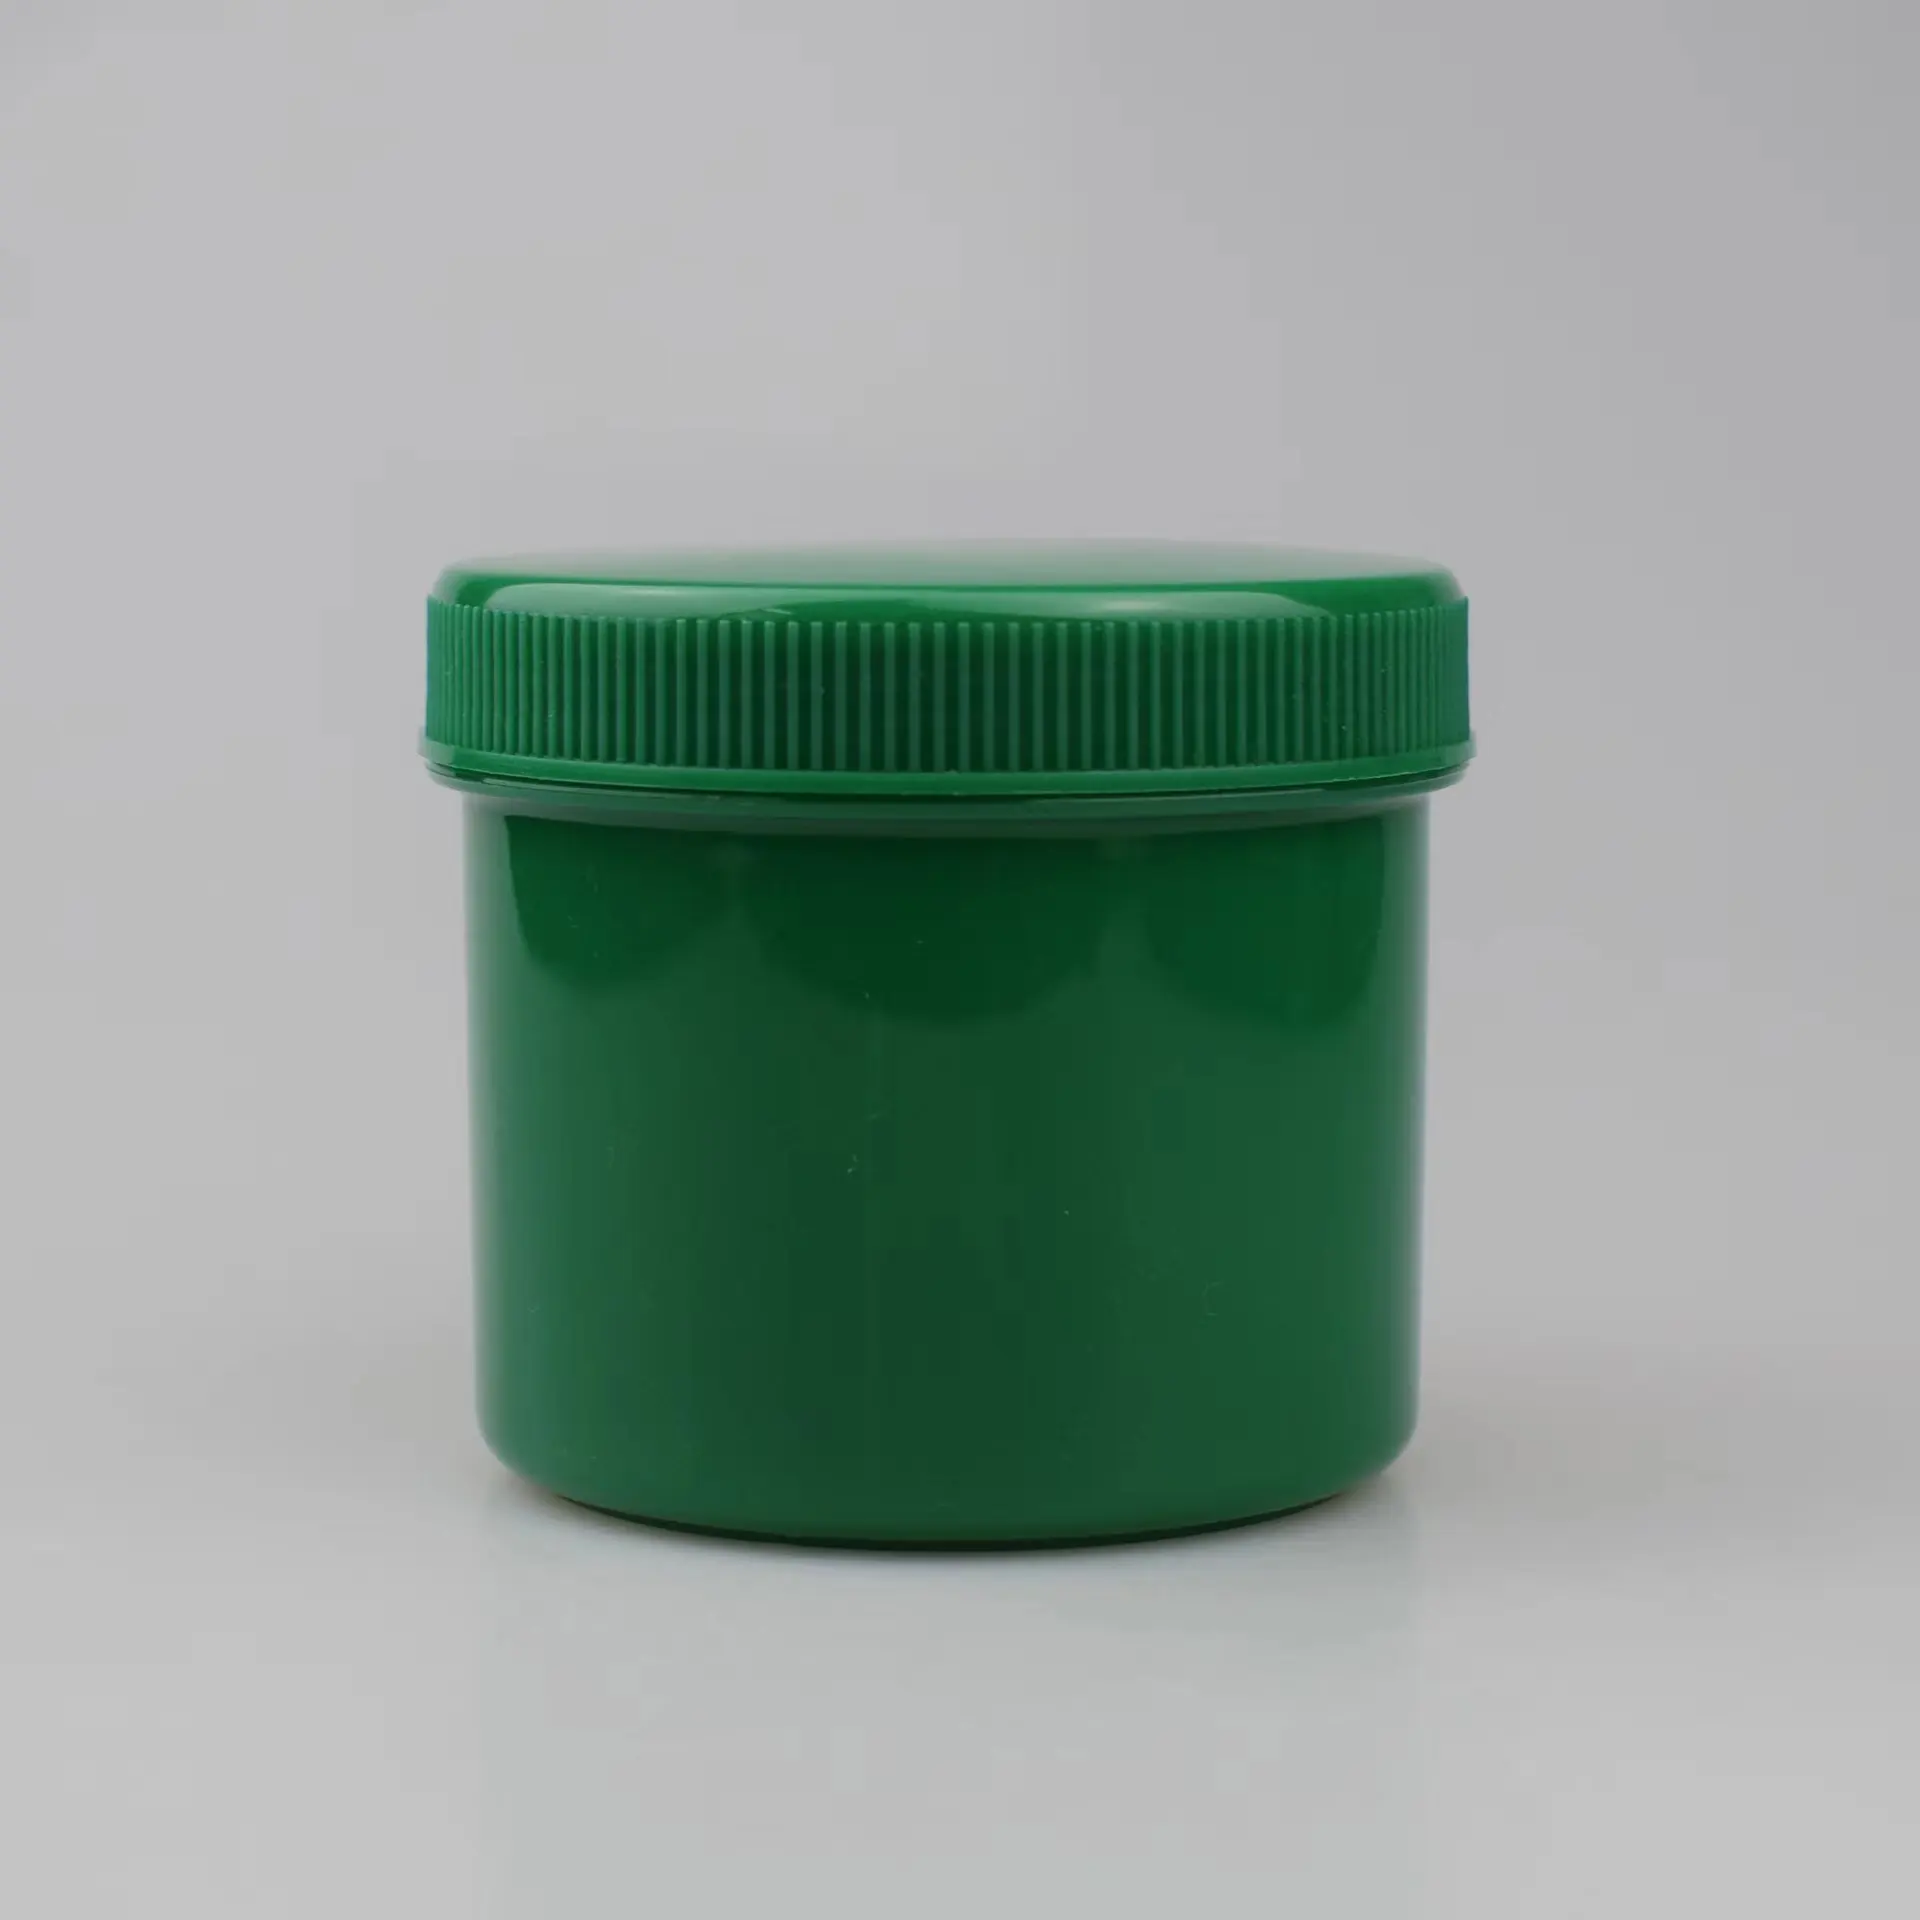 Yueyiカスタム250ml緑の空のプラスチックジャーは蚊よけを保持することができます冷たい頭痛めまいグラスバーム軟膏プラスチックジャー